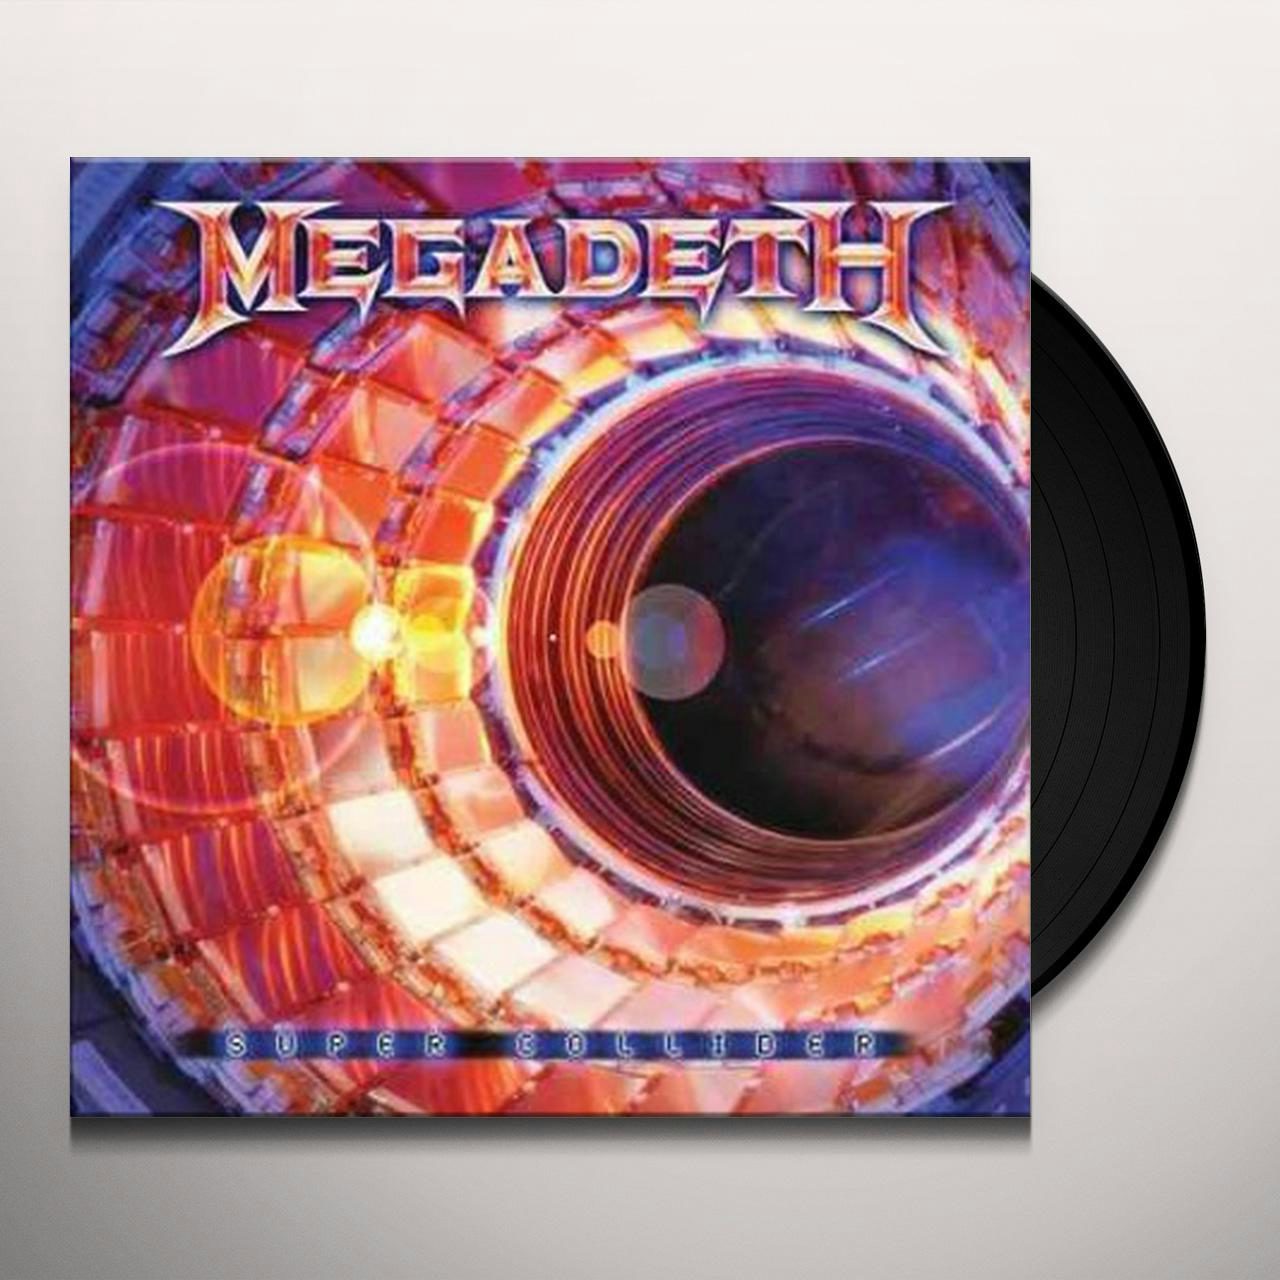 Super Collider Vinyl Record - Megadeth